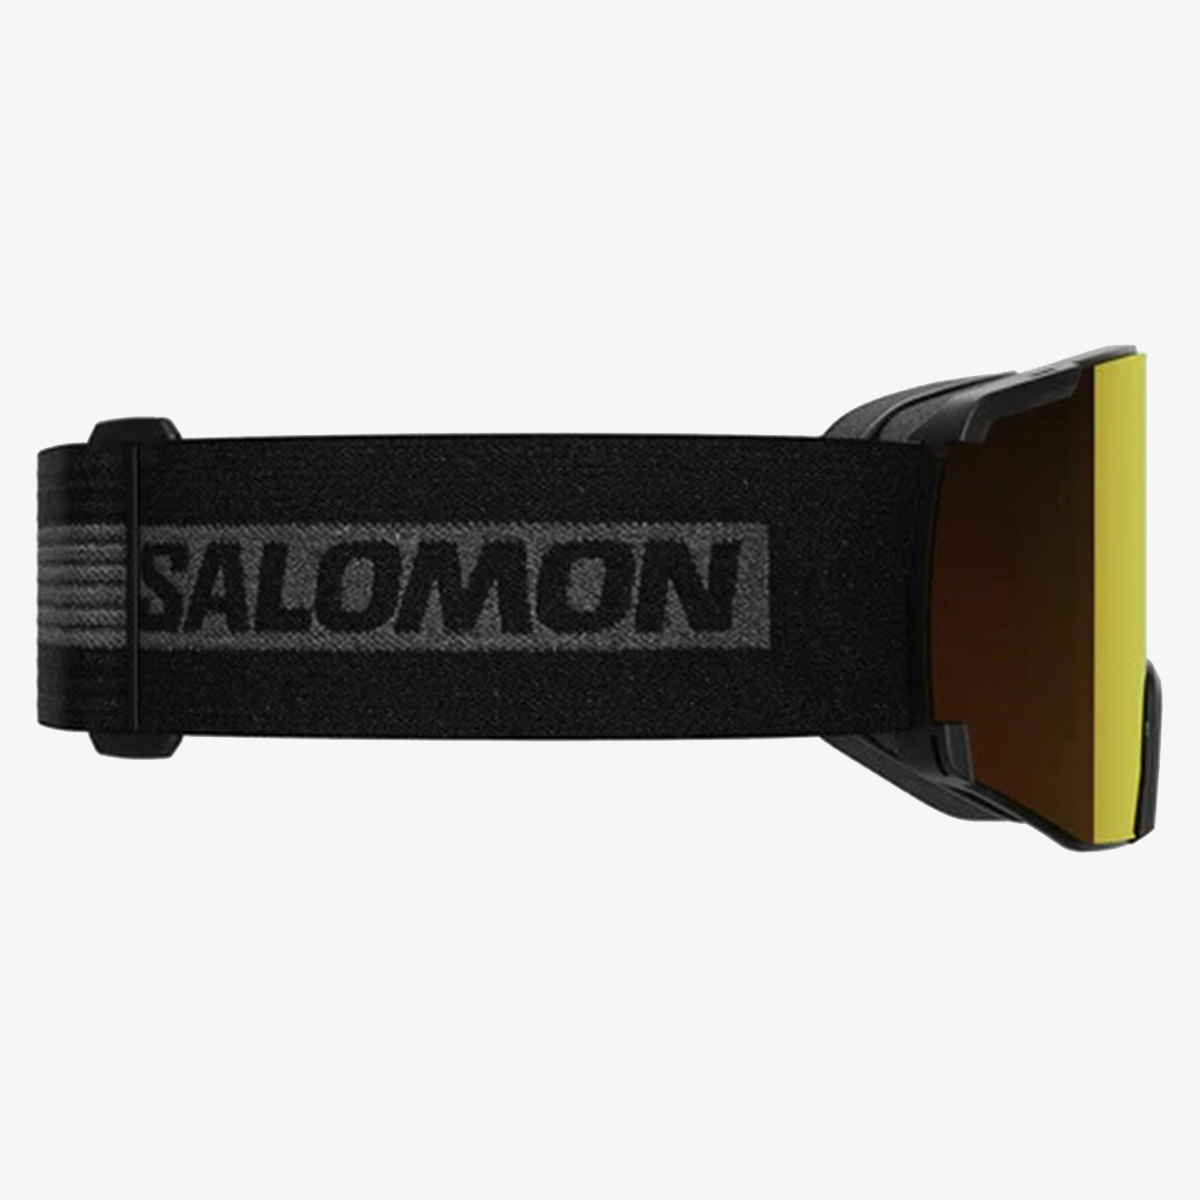 SALOMON S/VIEW 